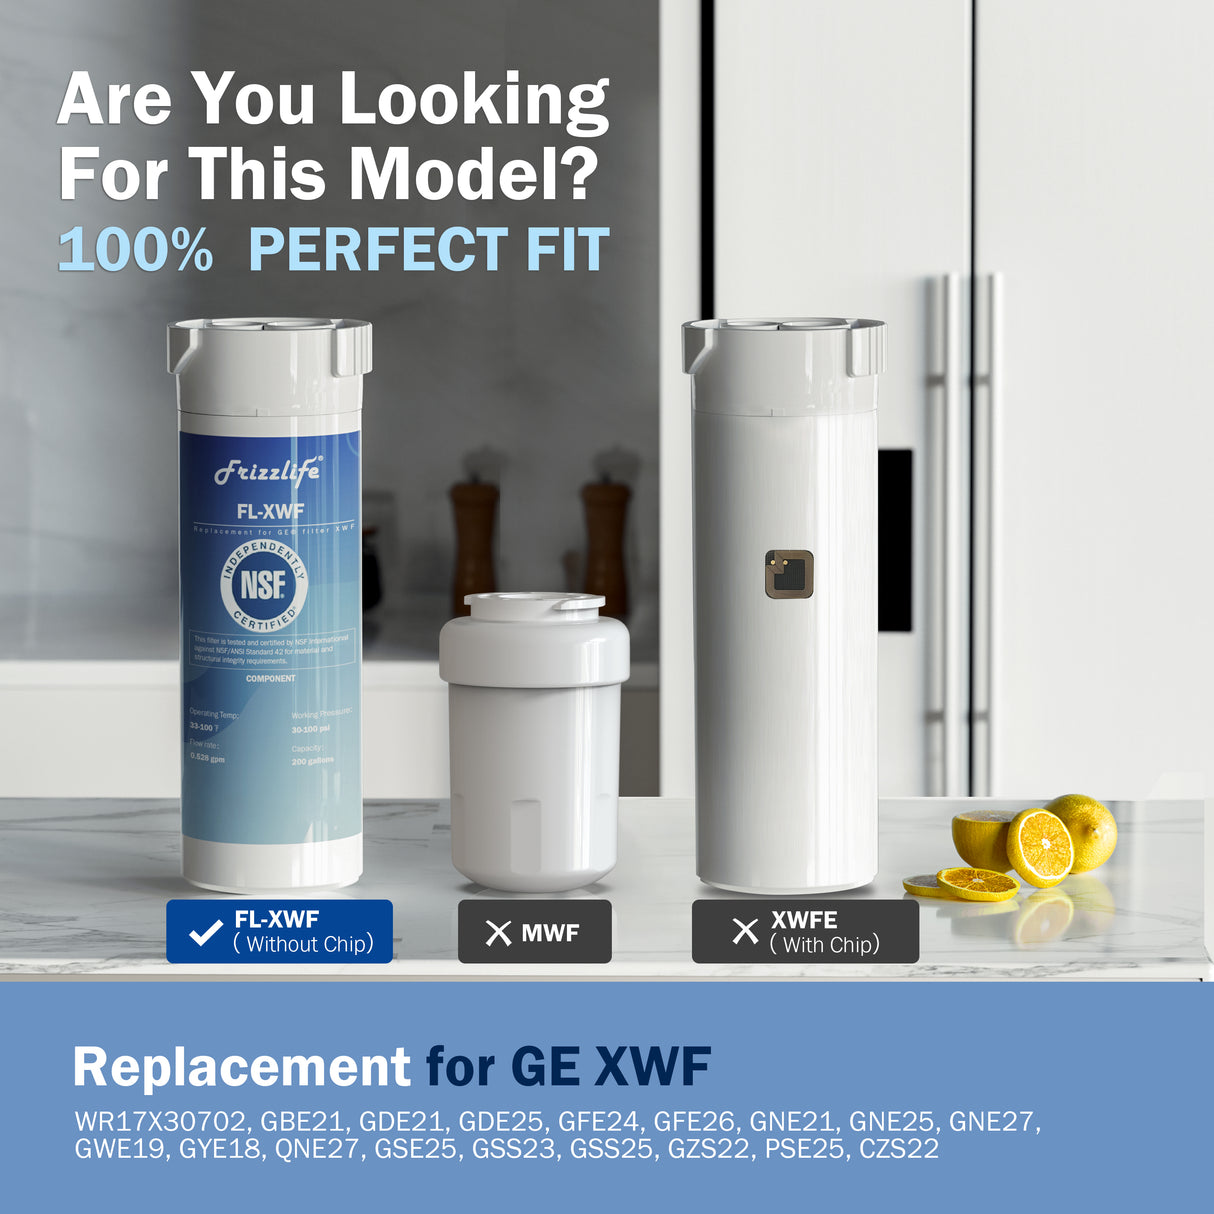 【Pedido anticipado - ETA el 15 de octubre】Reemplazo del filtro de agua para refrigerador Frizzlife XWF (NO XWFE) para GE XWF, certificado NSF, se ajusta a la marca original, diseño a prueba de fugas 